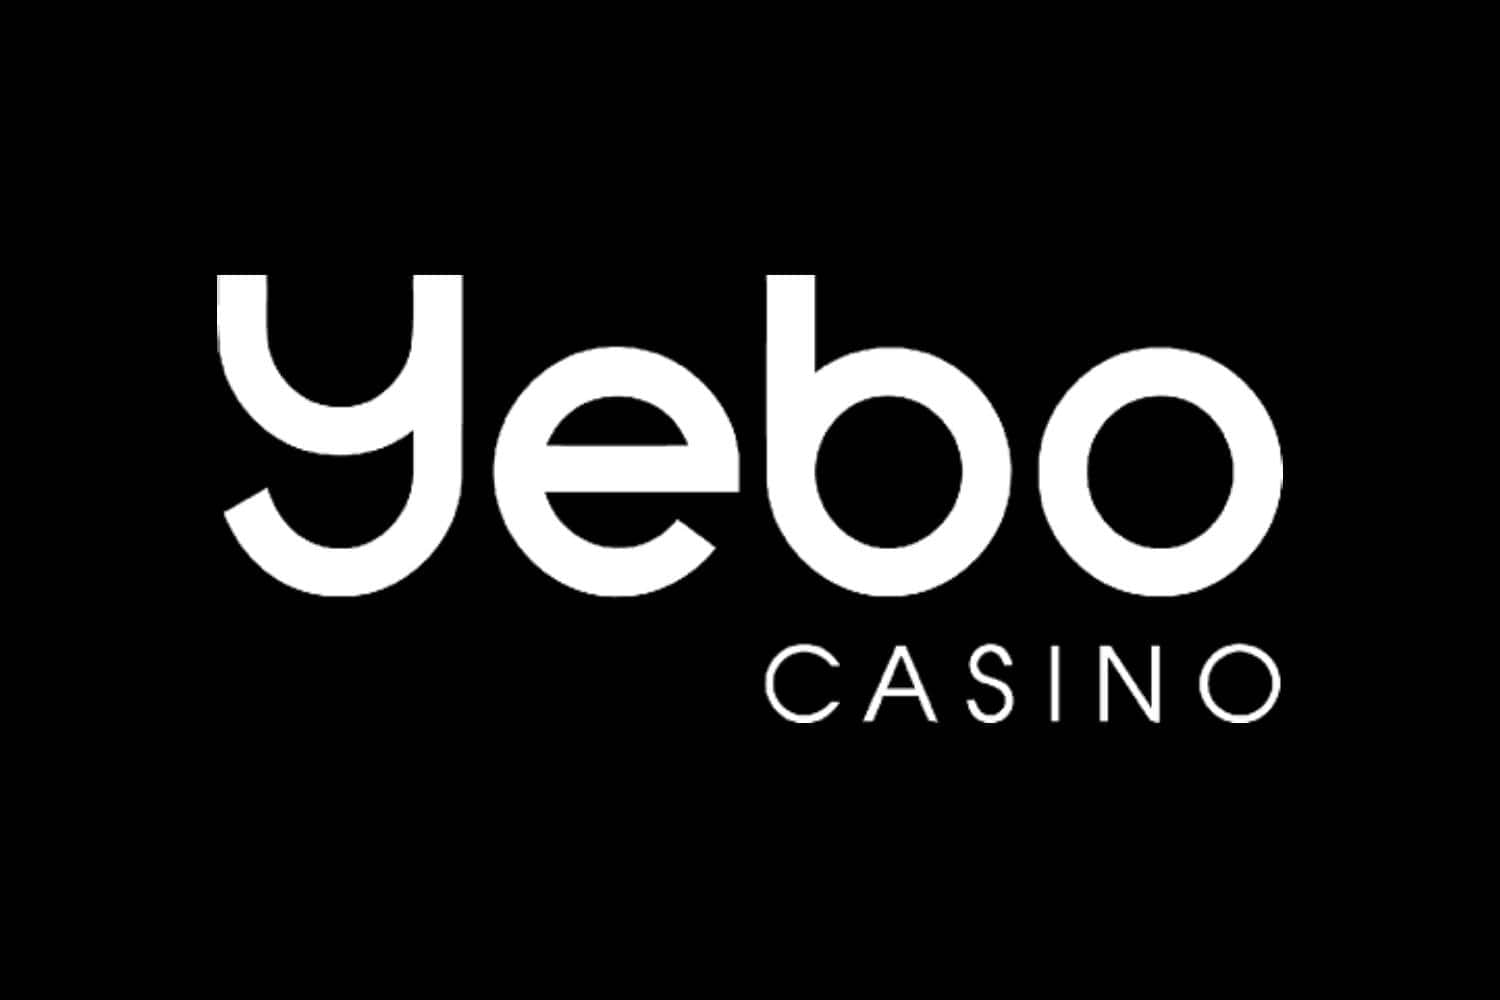 yebo casino